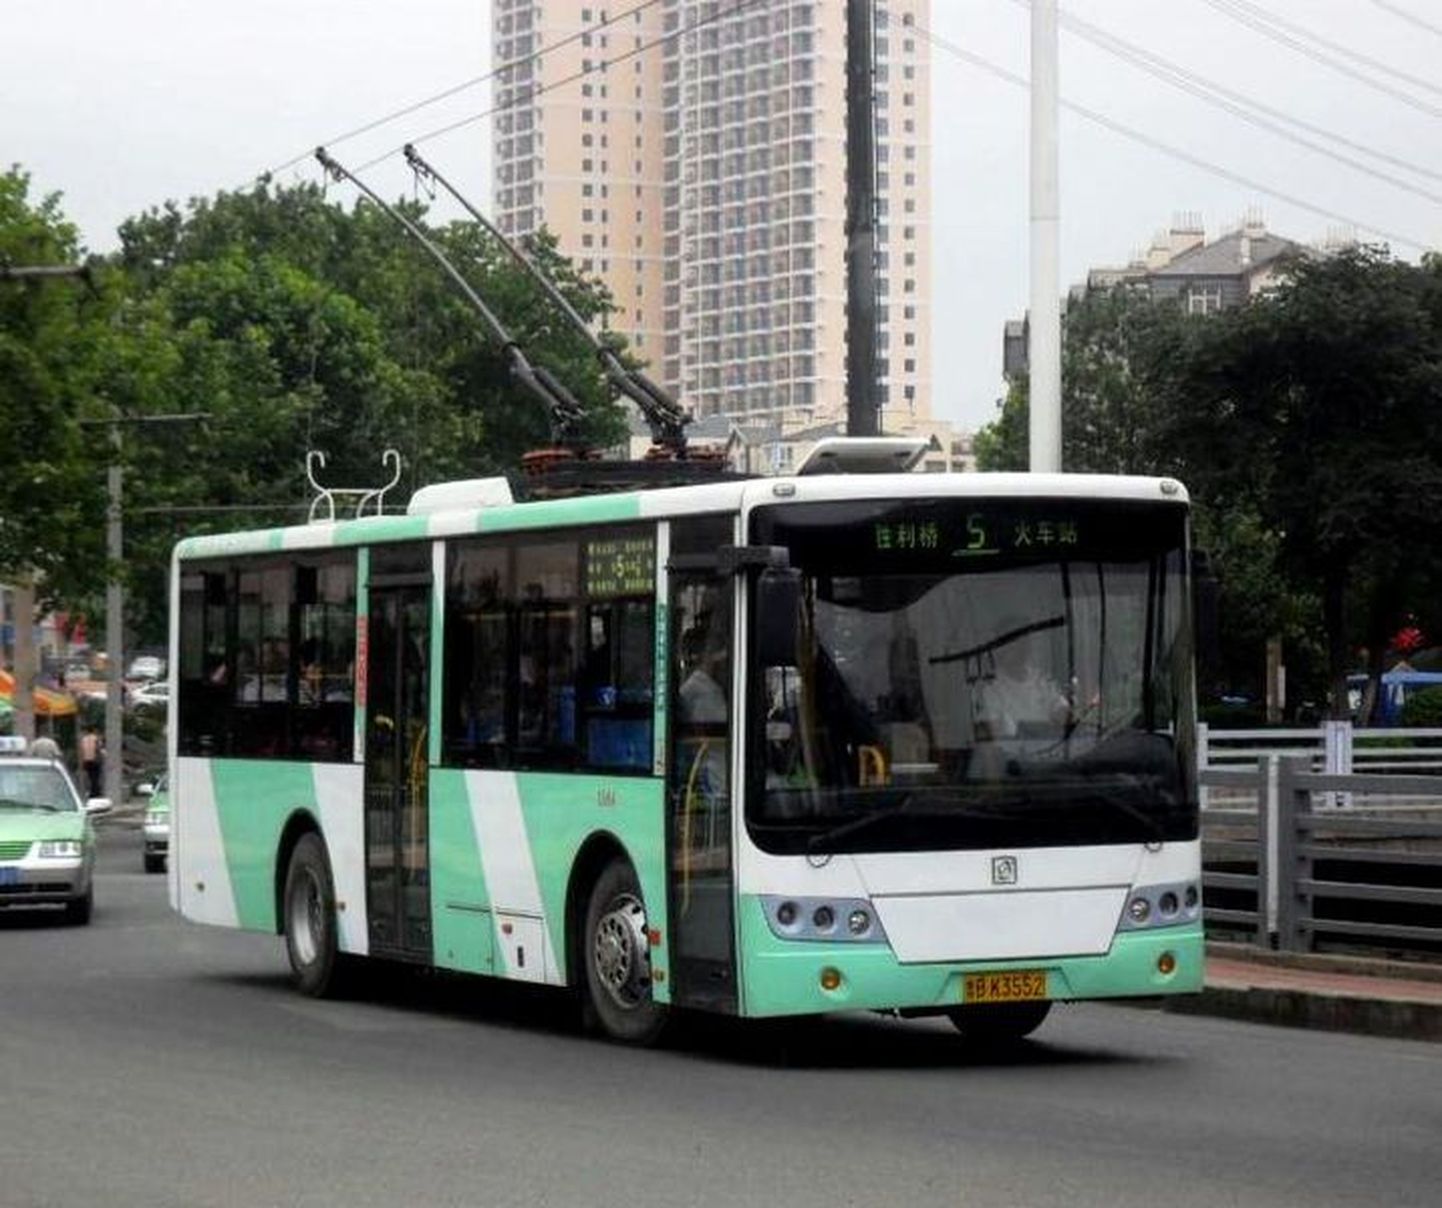 Hiina linnas Qingdaos sõidavad ringi Tallinna uue ühistranspordi kujundusele sarnase kujundusega trollid.